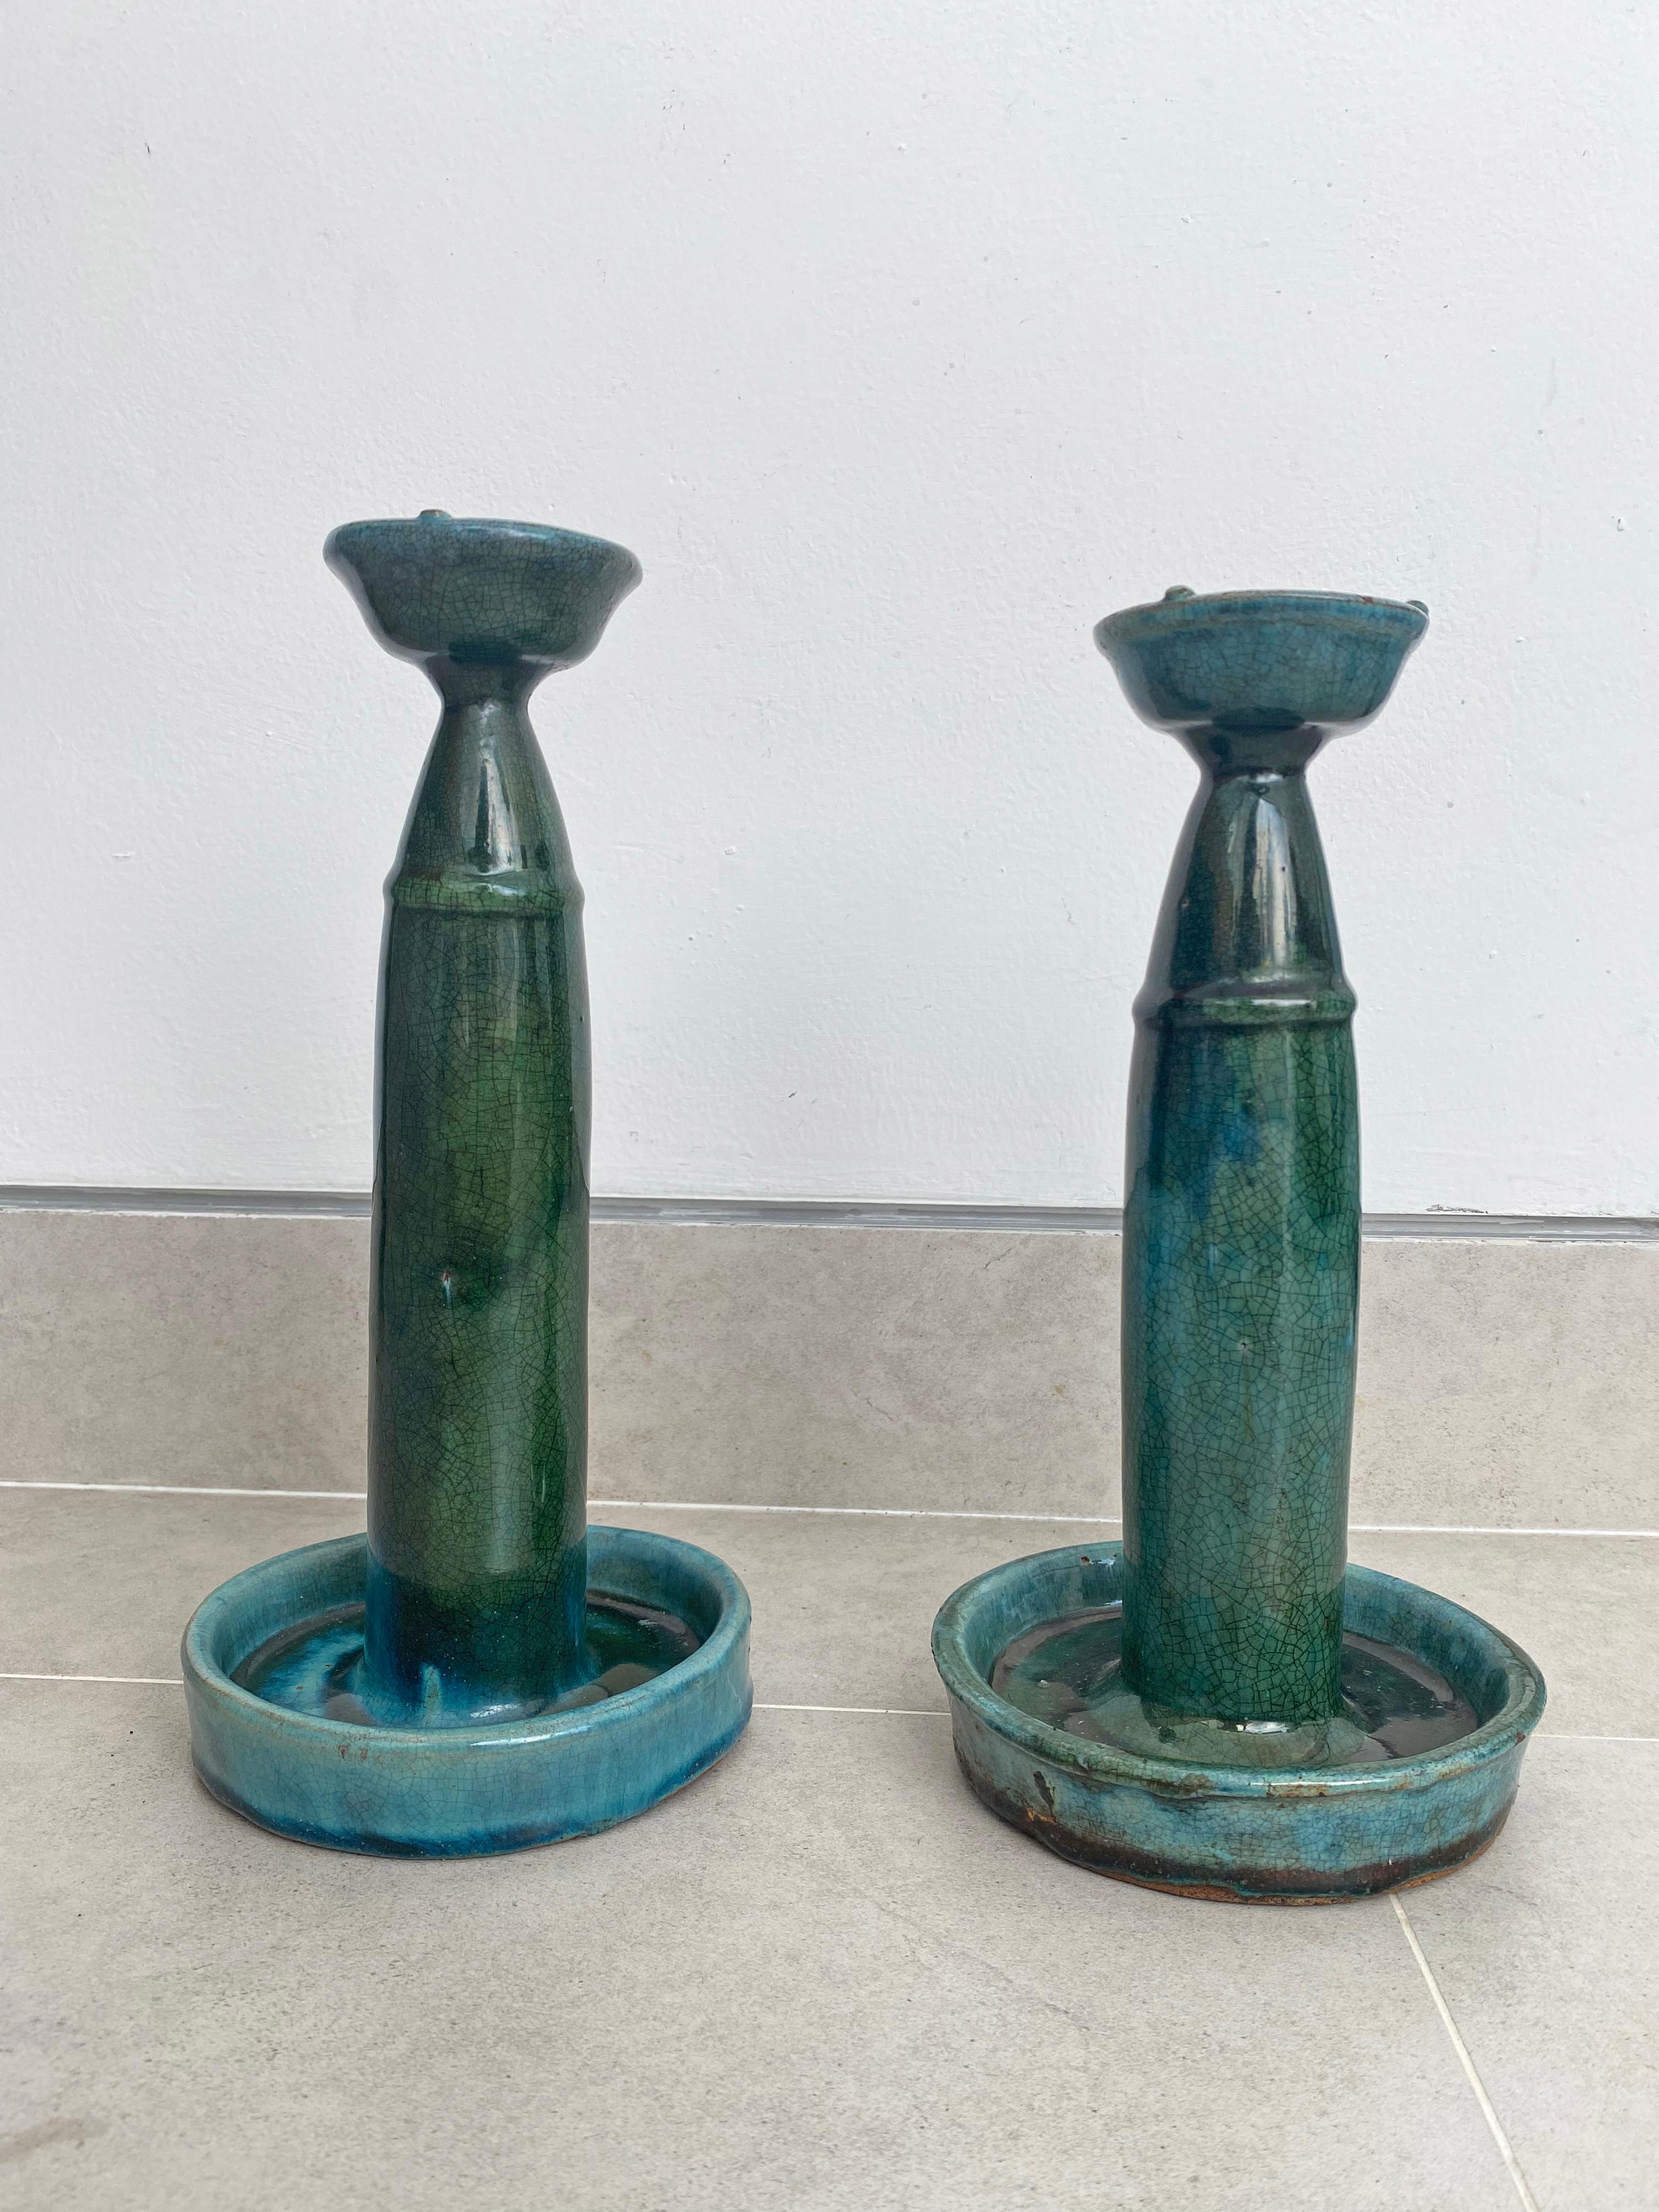 Ces lampes à huile en porcelaine de Shiwan datant du début du XXe siècle présentent une glaçure verte et bleue. La céramique de Shiwan est un style de poterie chinoise provenant du district de Shiwanzhen, près de Guangdong, en Chine. Objets